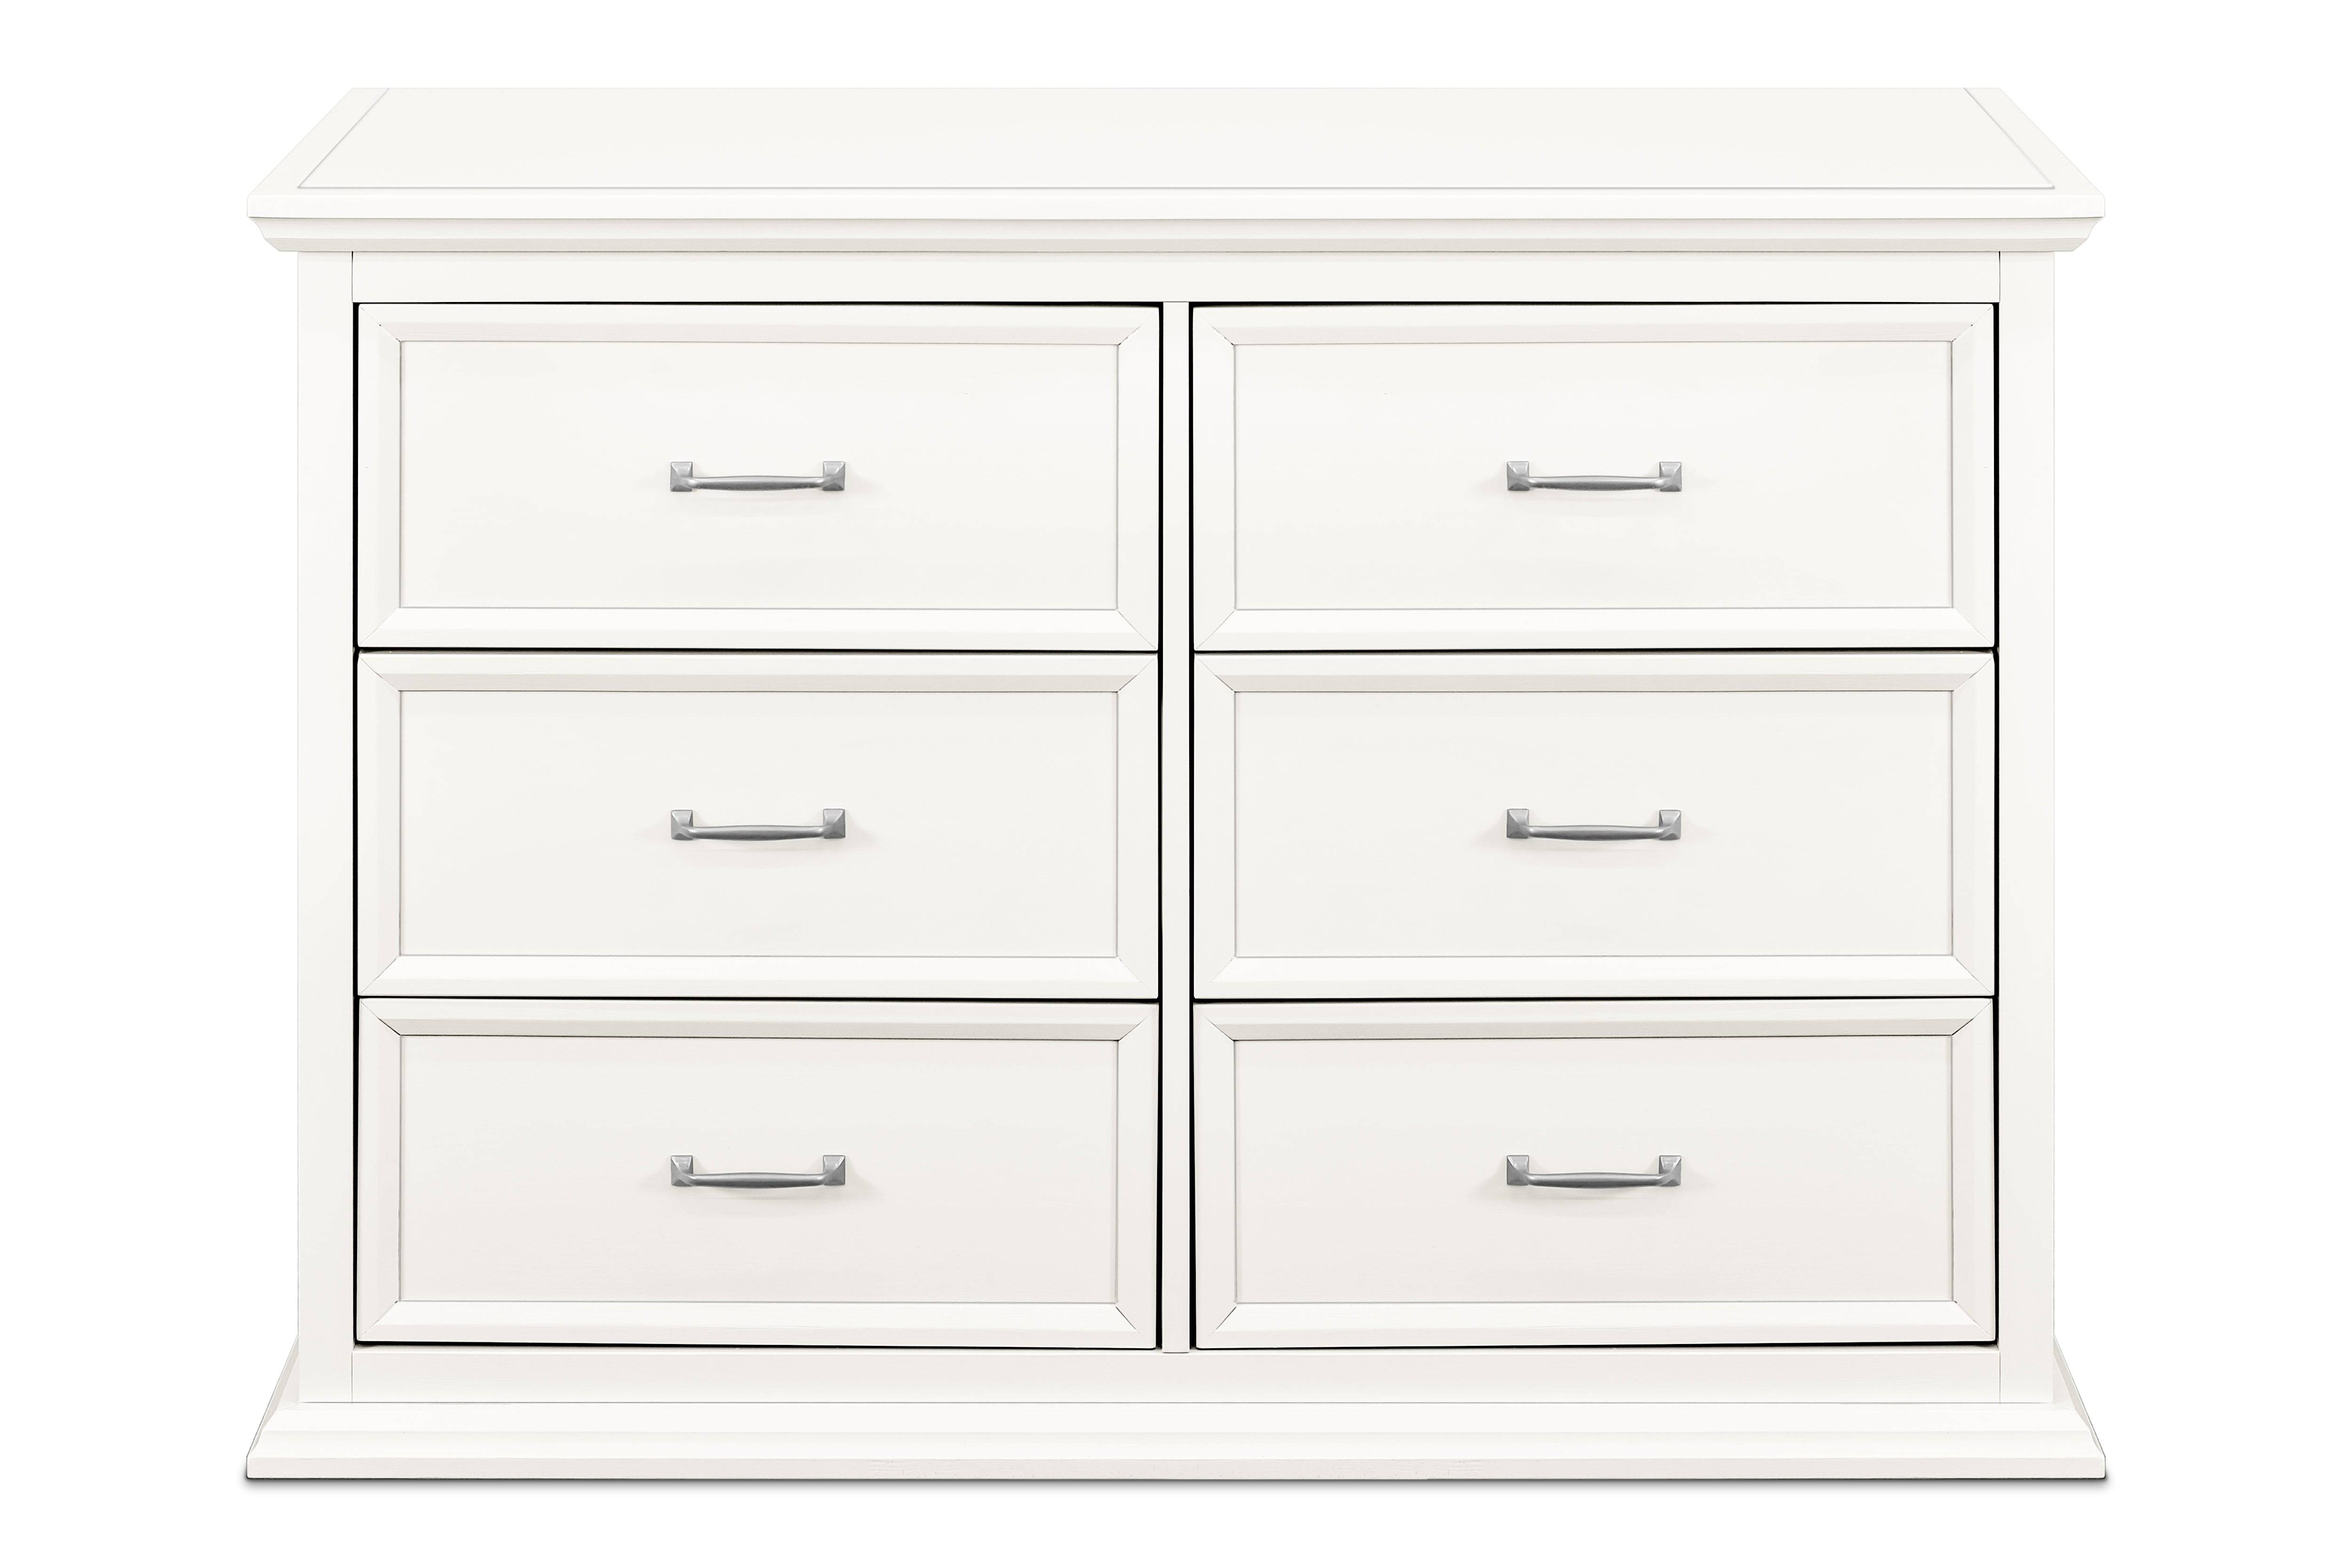 Foothill-Louis 6 Drawer Dresser in Warm White - Twinkle Twinkle Little One